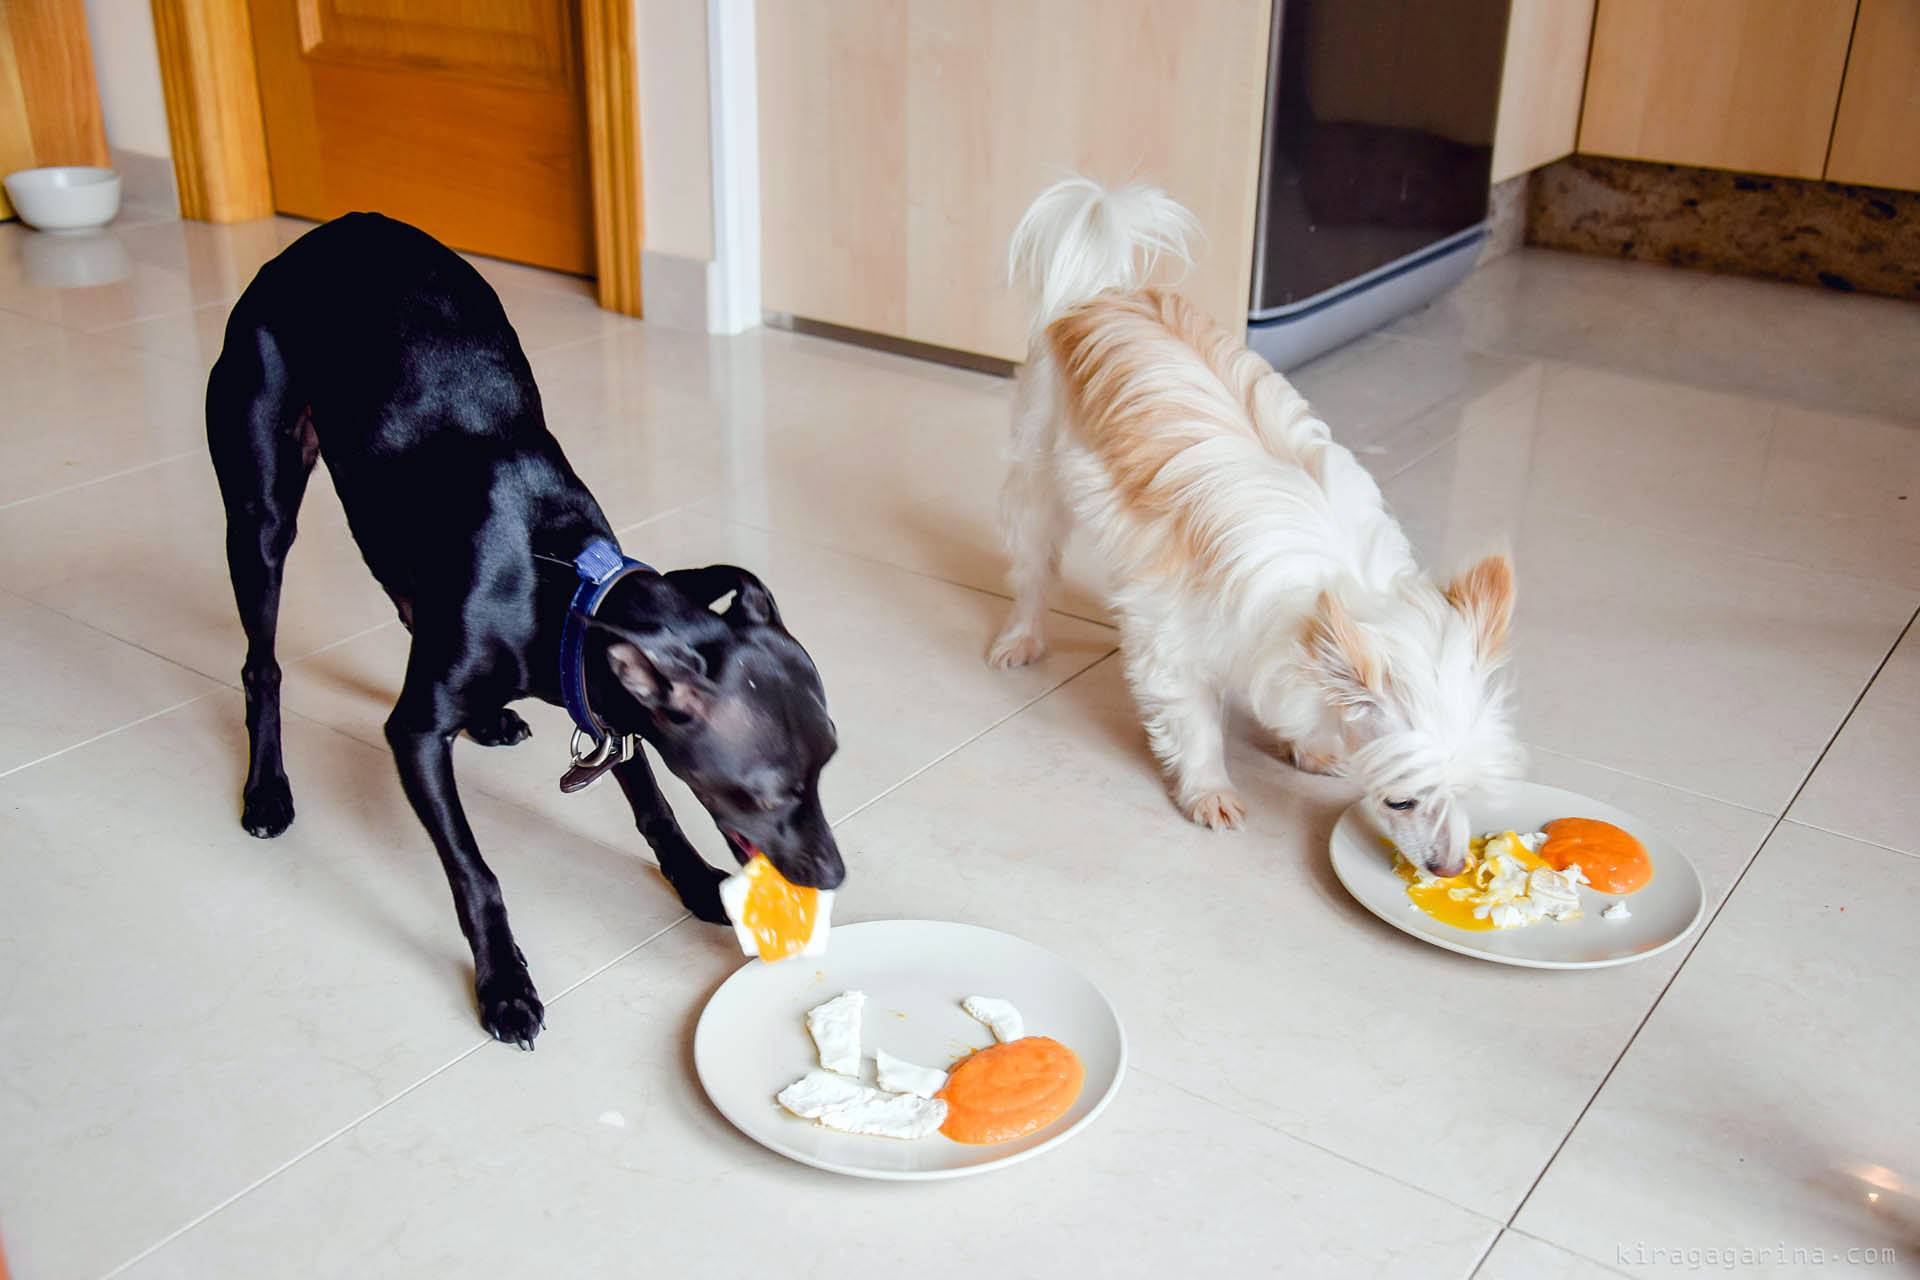 Можно ли собакам острое – лук, чеснок и перец?